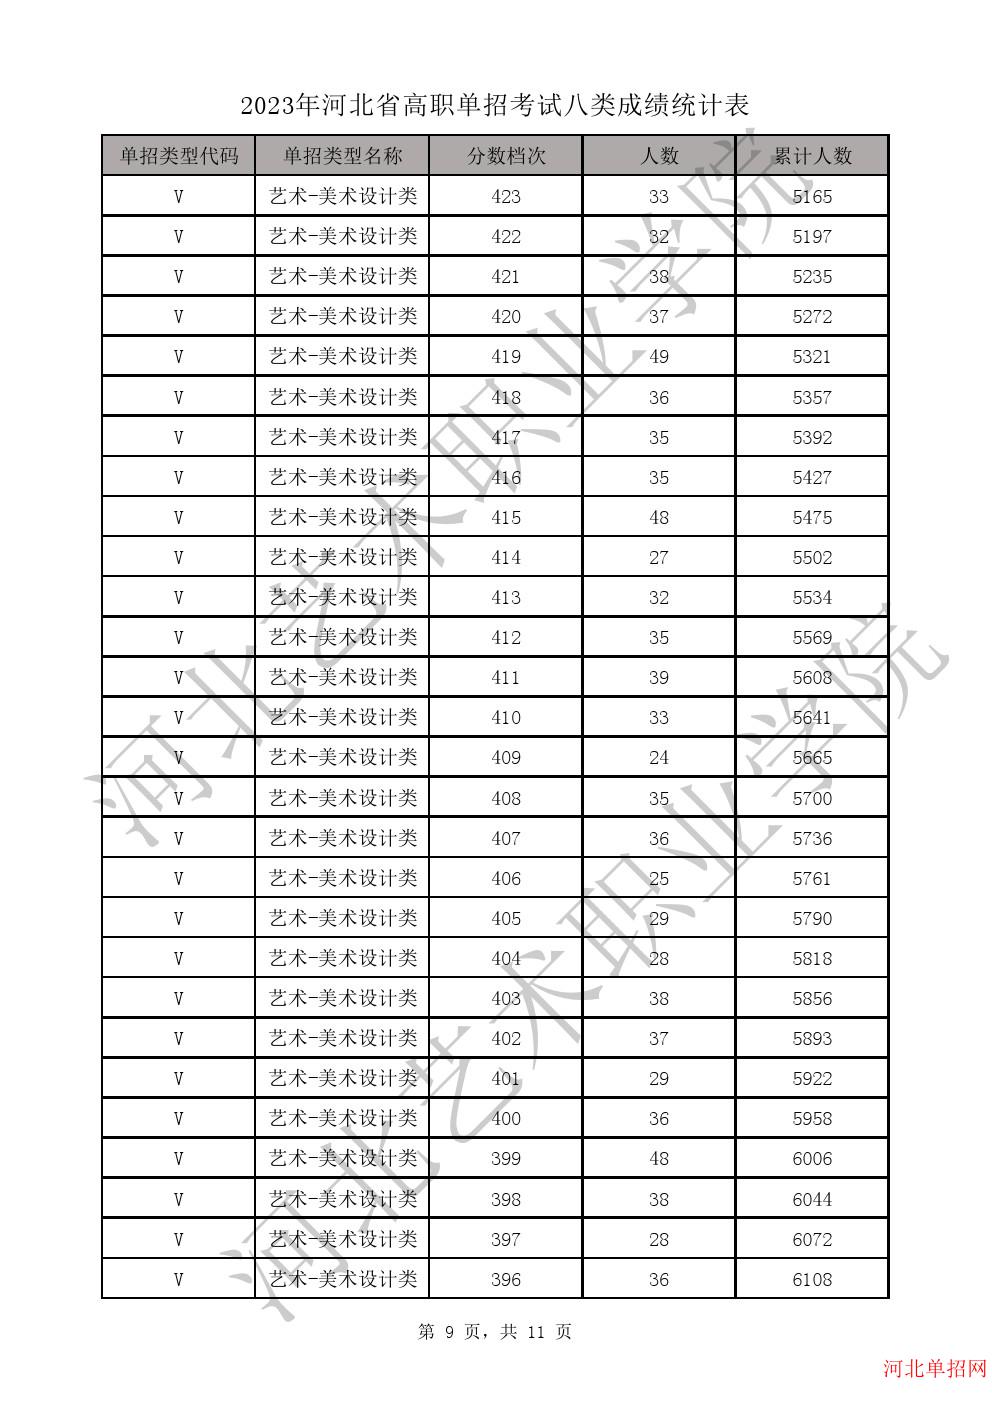 2023年河北省高职单招考试八类成绩统计表-V艺术-美术设计类一分一档表 图9